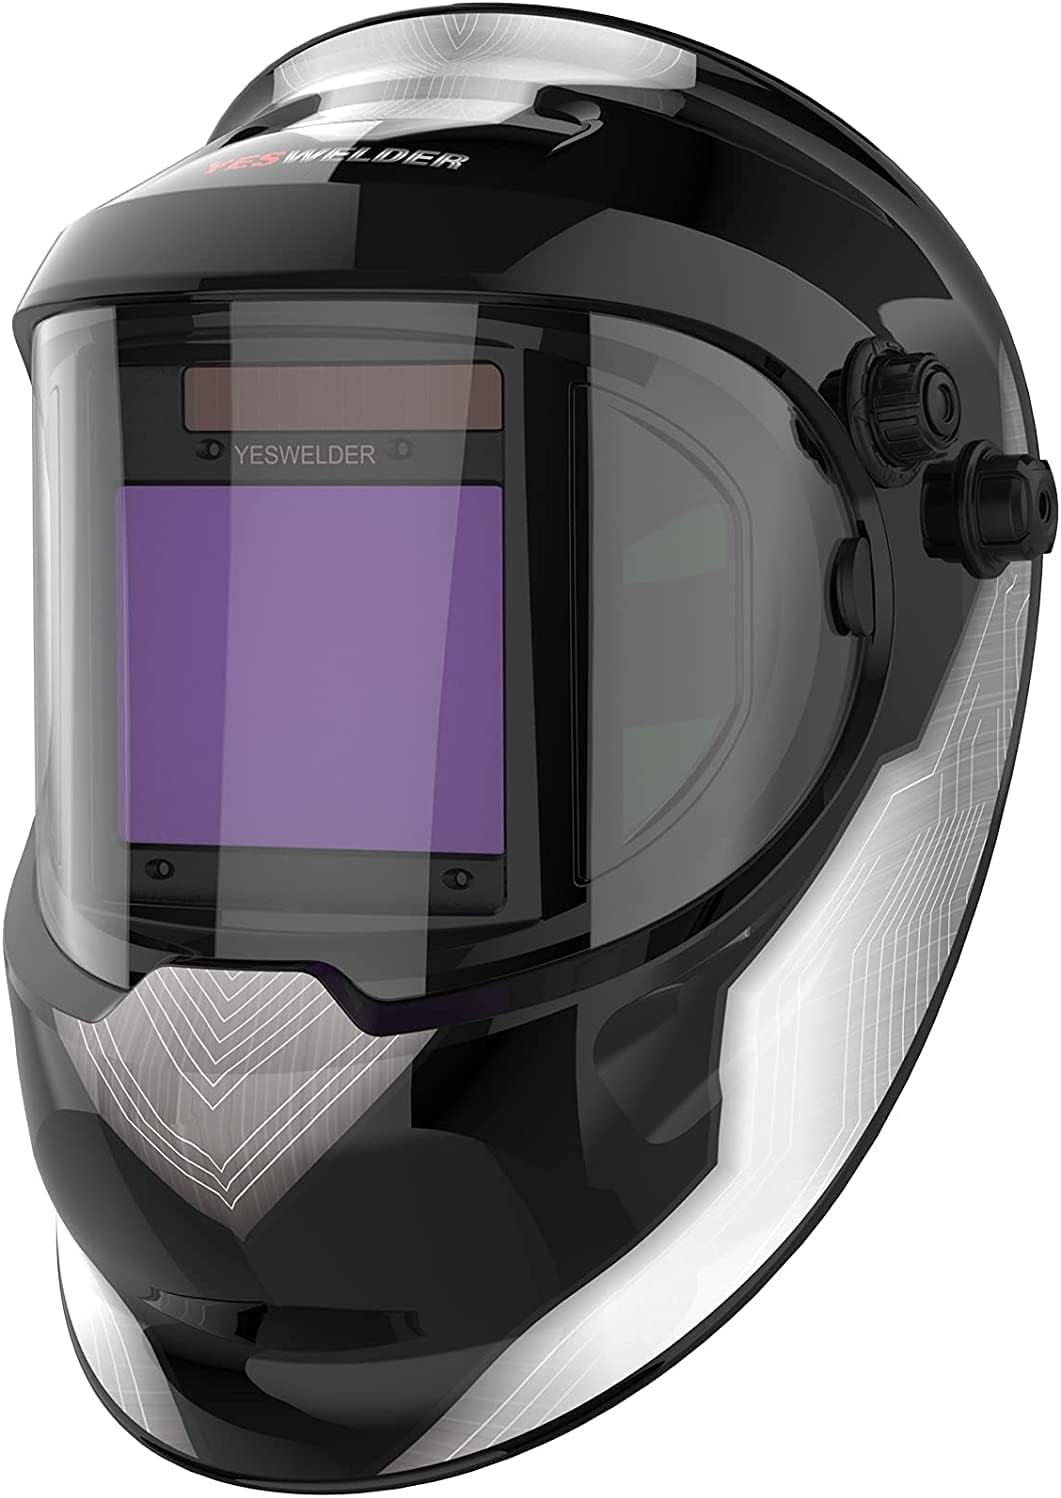 YESWELDER LYG-Q800D Auto Darkening Welding Helmet